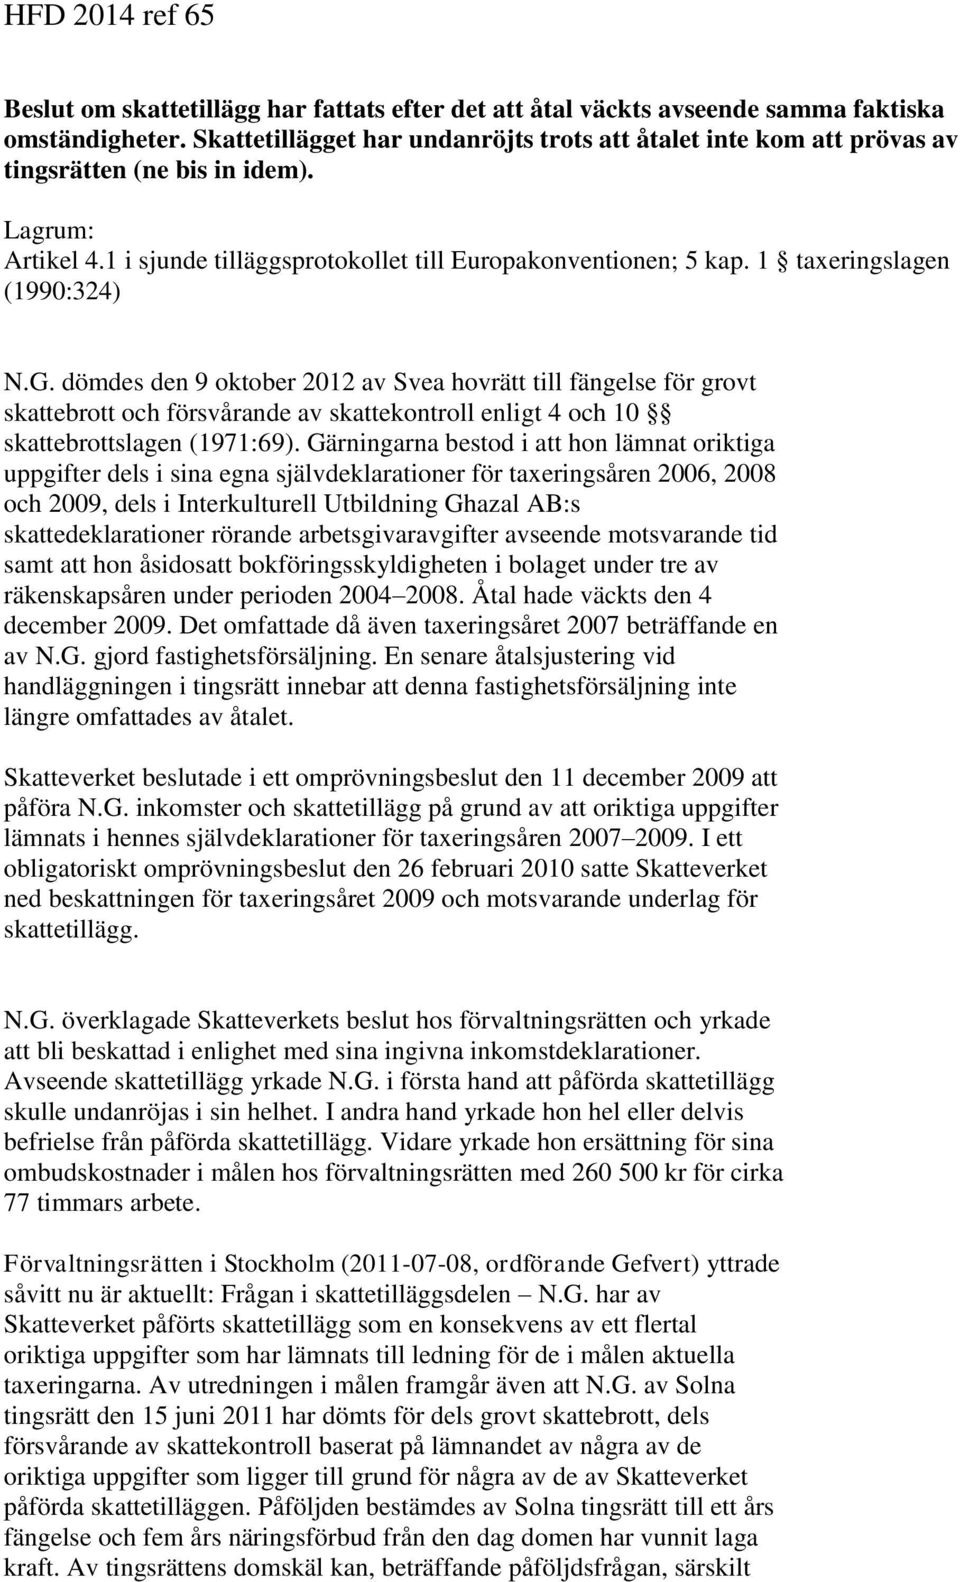 1 taxeringslagen (1990:324) N.G. dömdes den 9 oktober 2012 av Svea hovrätt till fängelse för grovt skattebrott och försvårande av skattekontroll enligt 4 och 10 skattebrottslagen (1971:69).